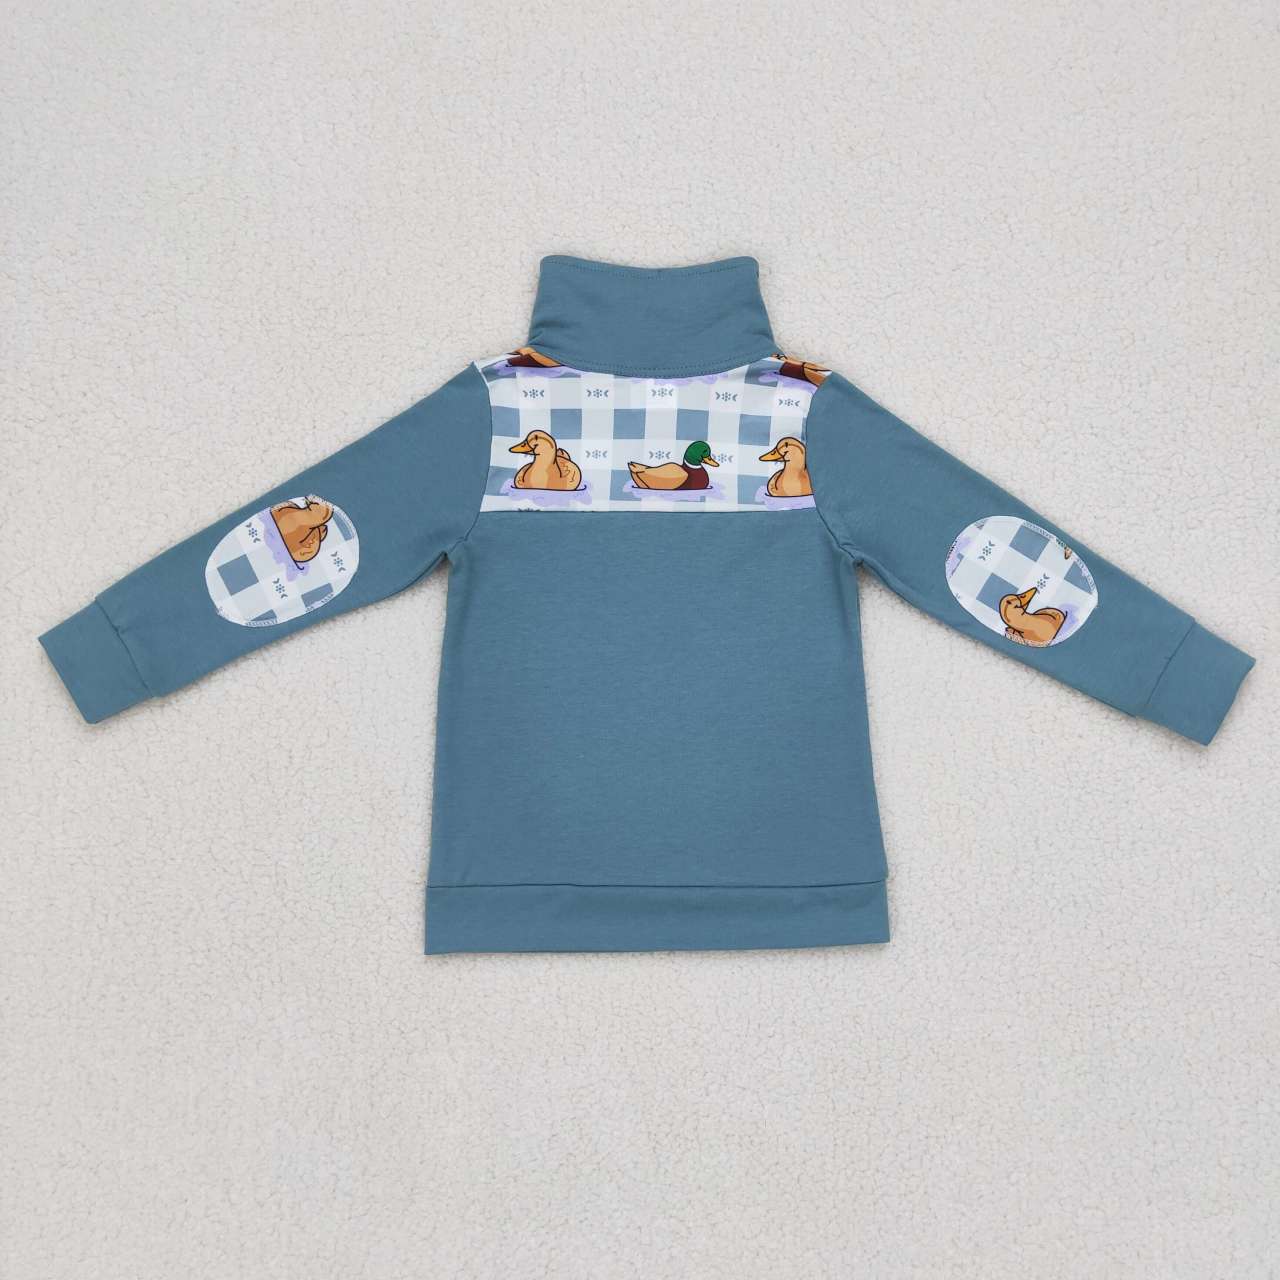 BT0329 Duck print boys long sleeve zipper pullover shirts top